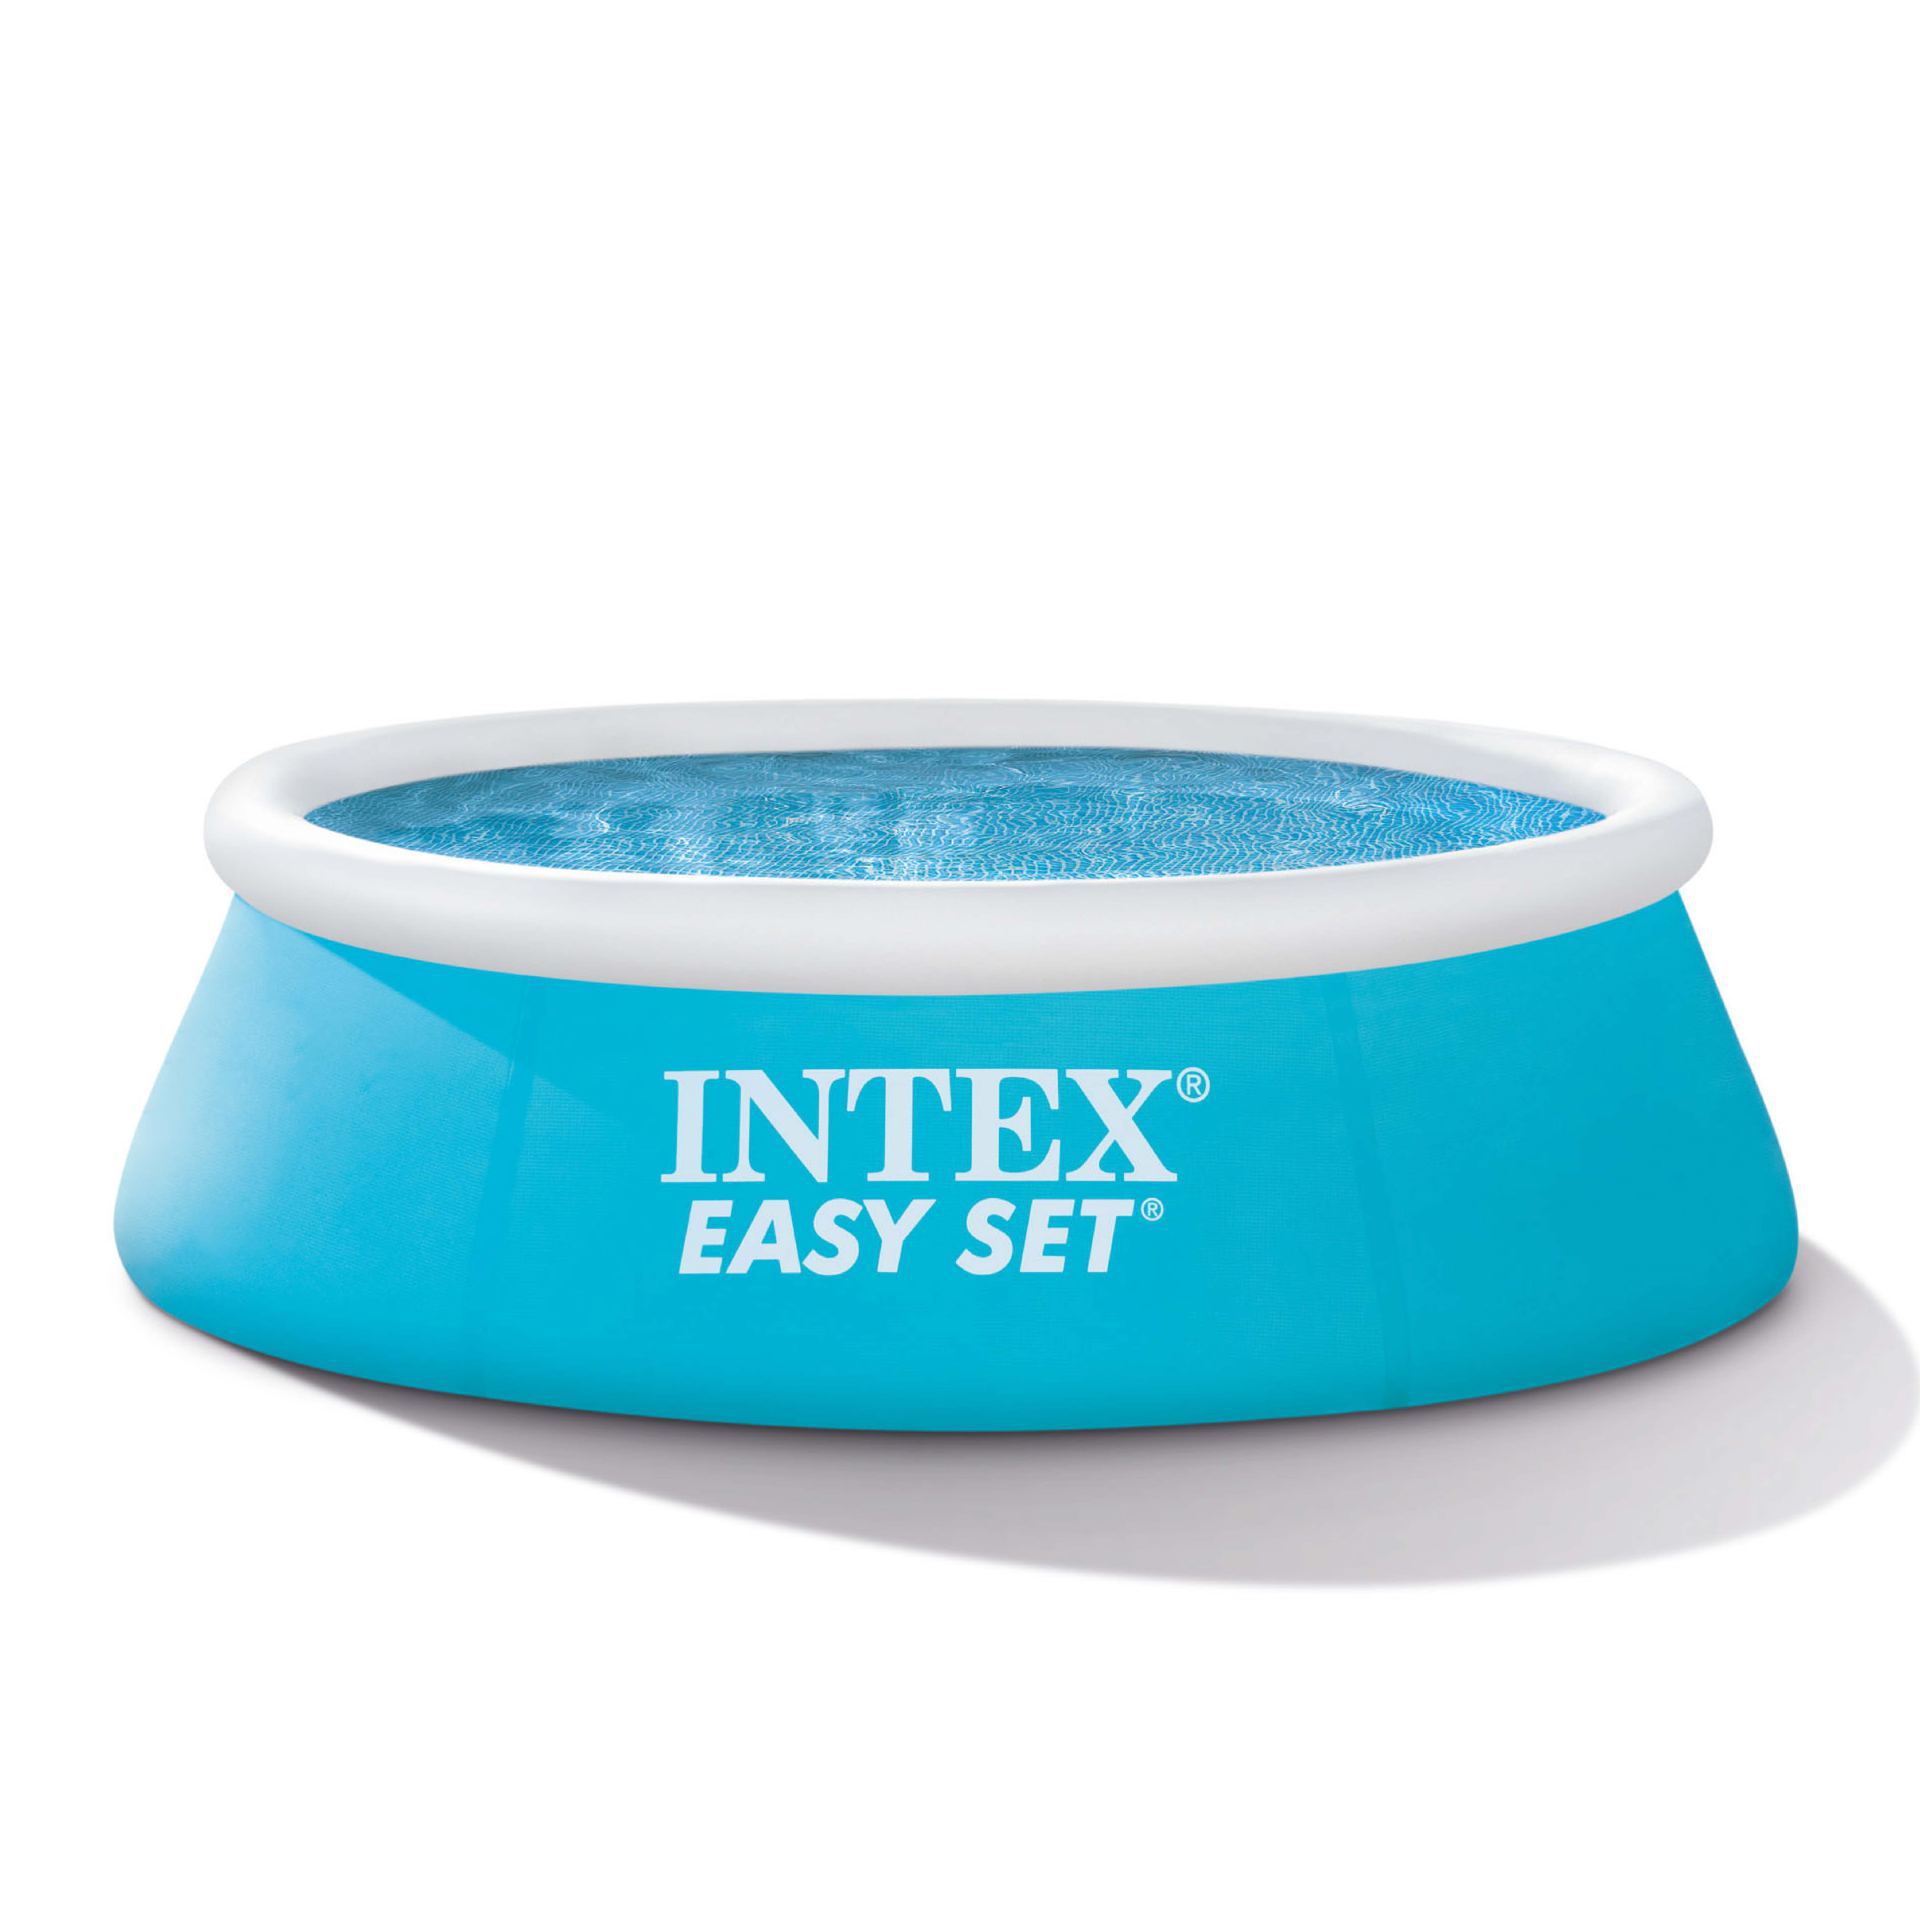 Intex easy set pool 183cm x 51cm